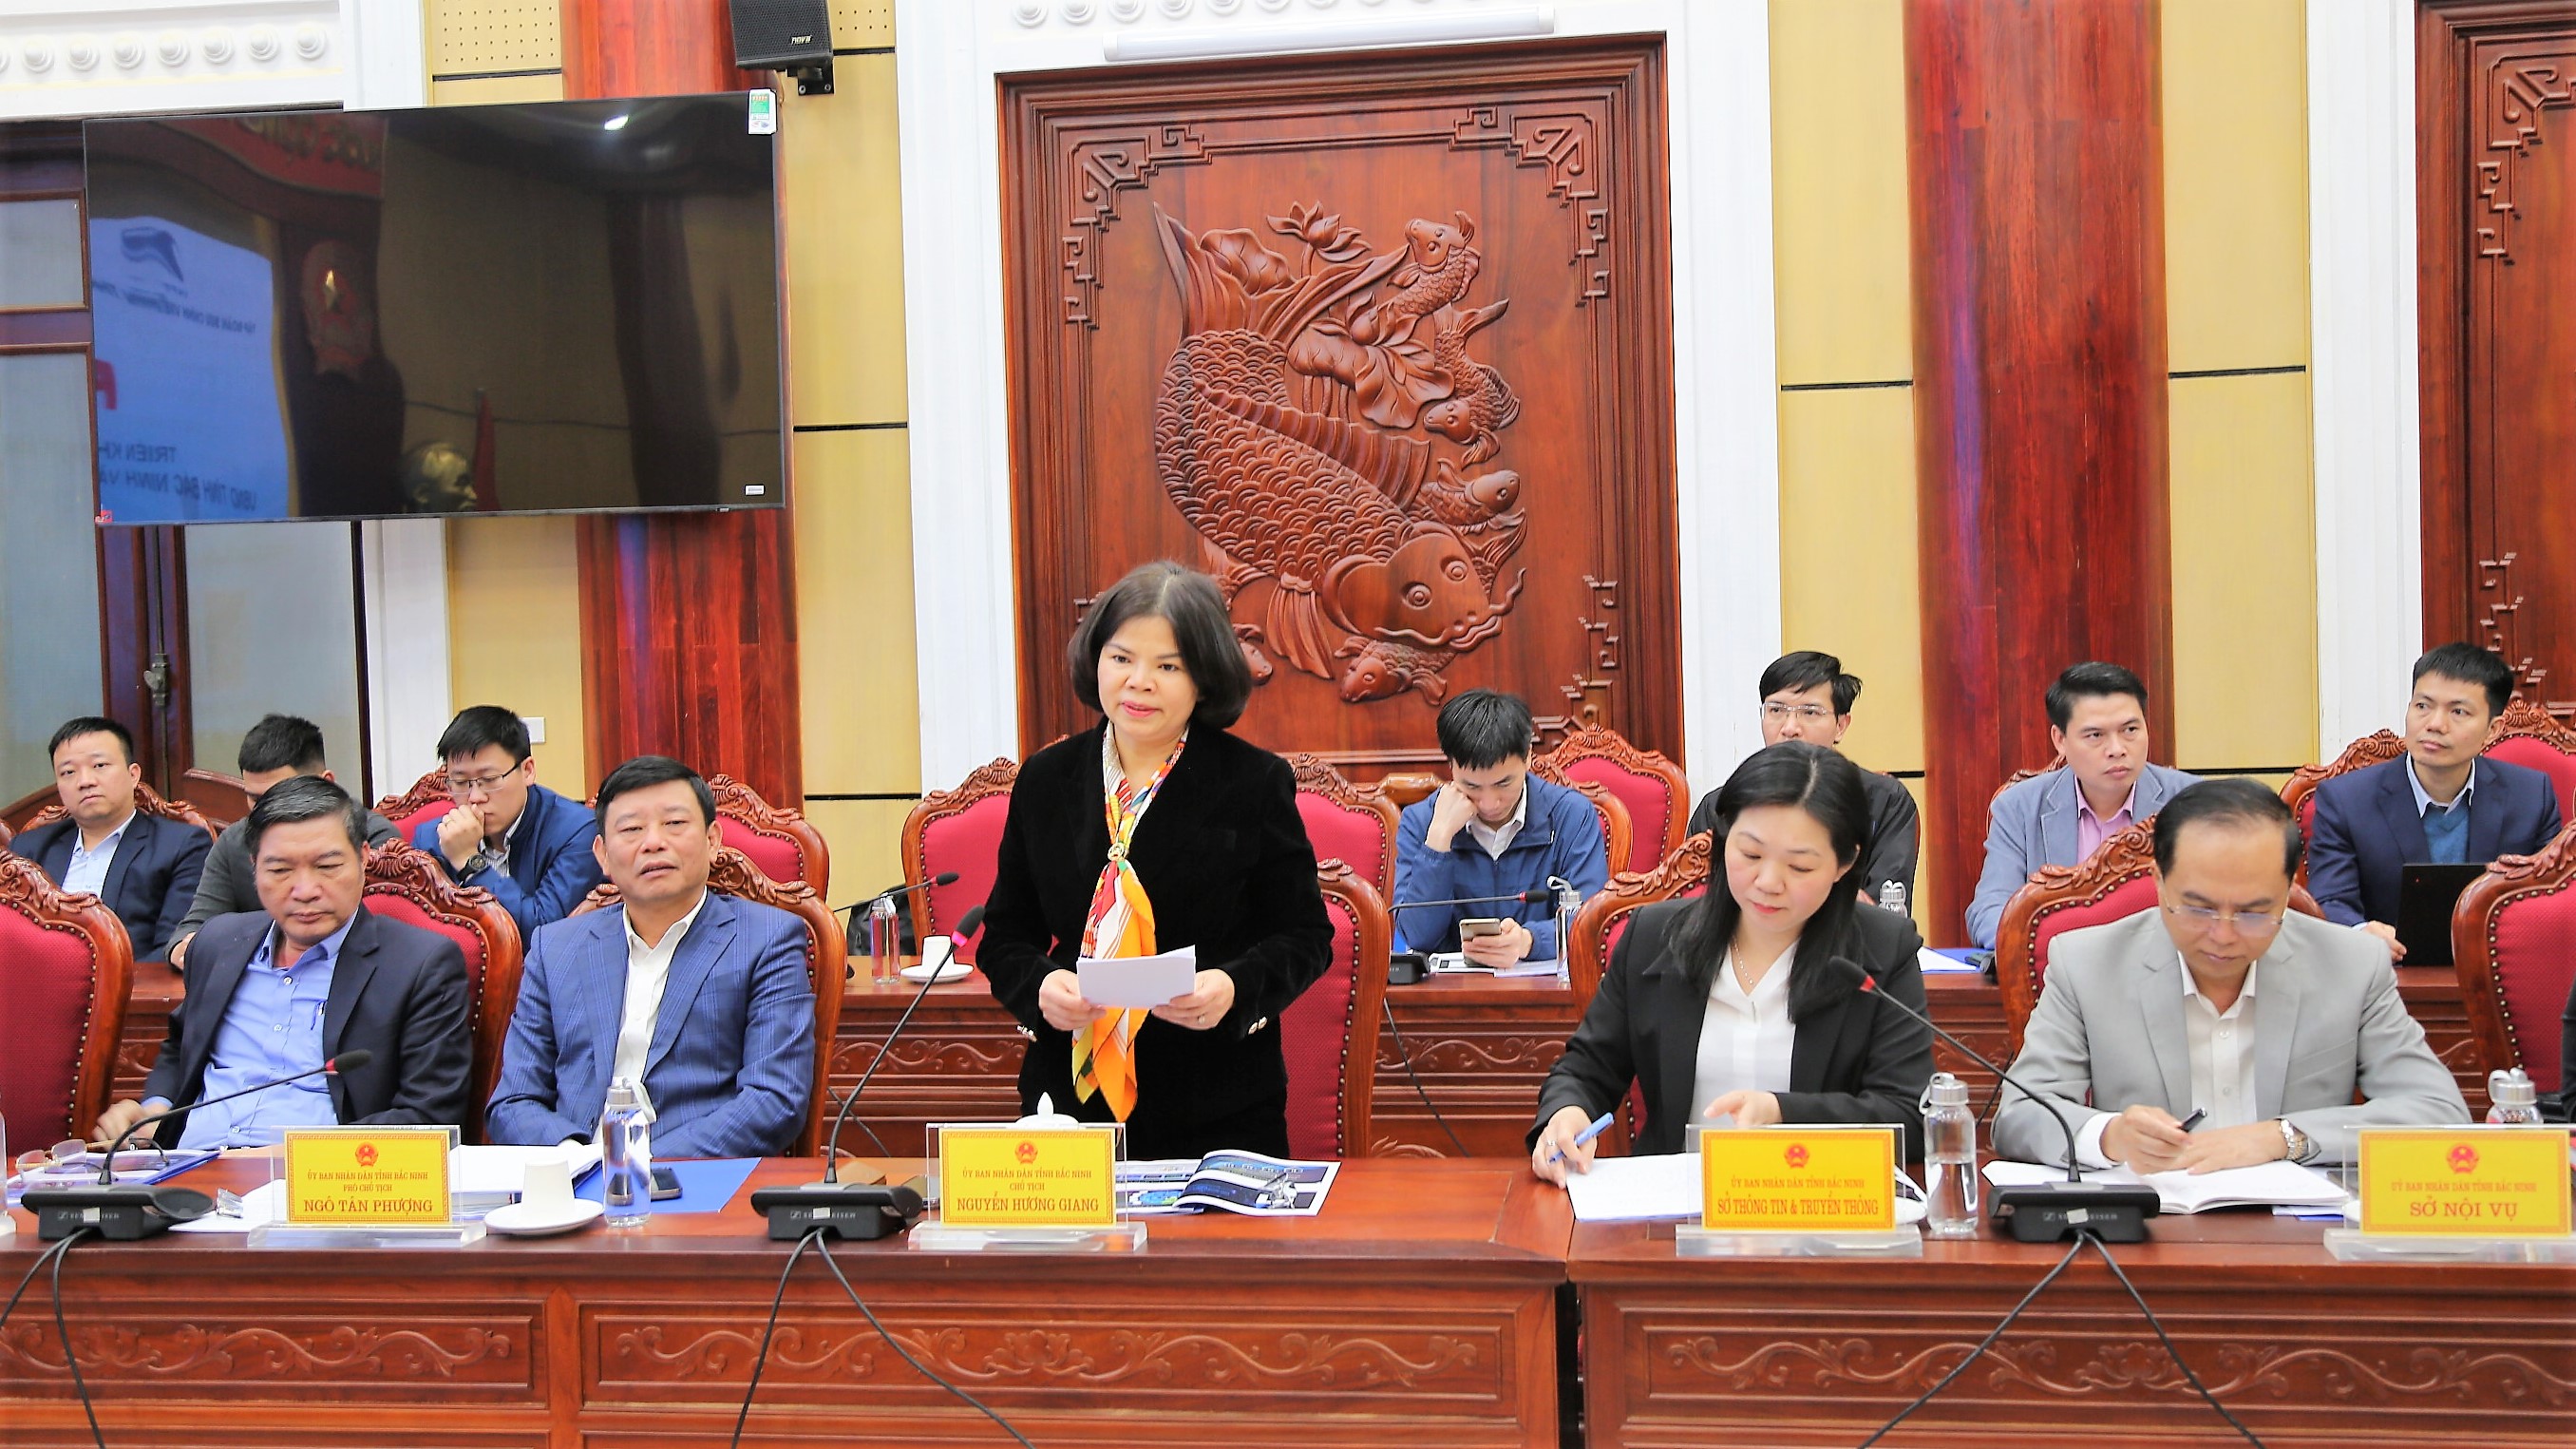 Triển khai thỏa thuận hợp tác giữa UBND tỉnh Bắc Ninh và Tập đoàn Bưu chính Viễn Thông Việt Nam